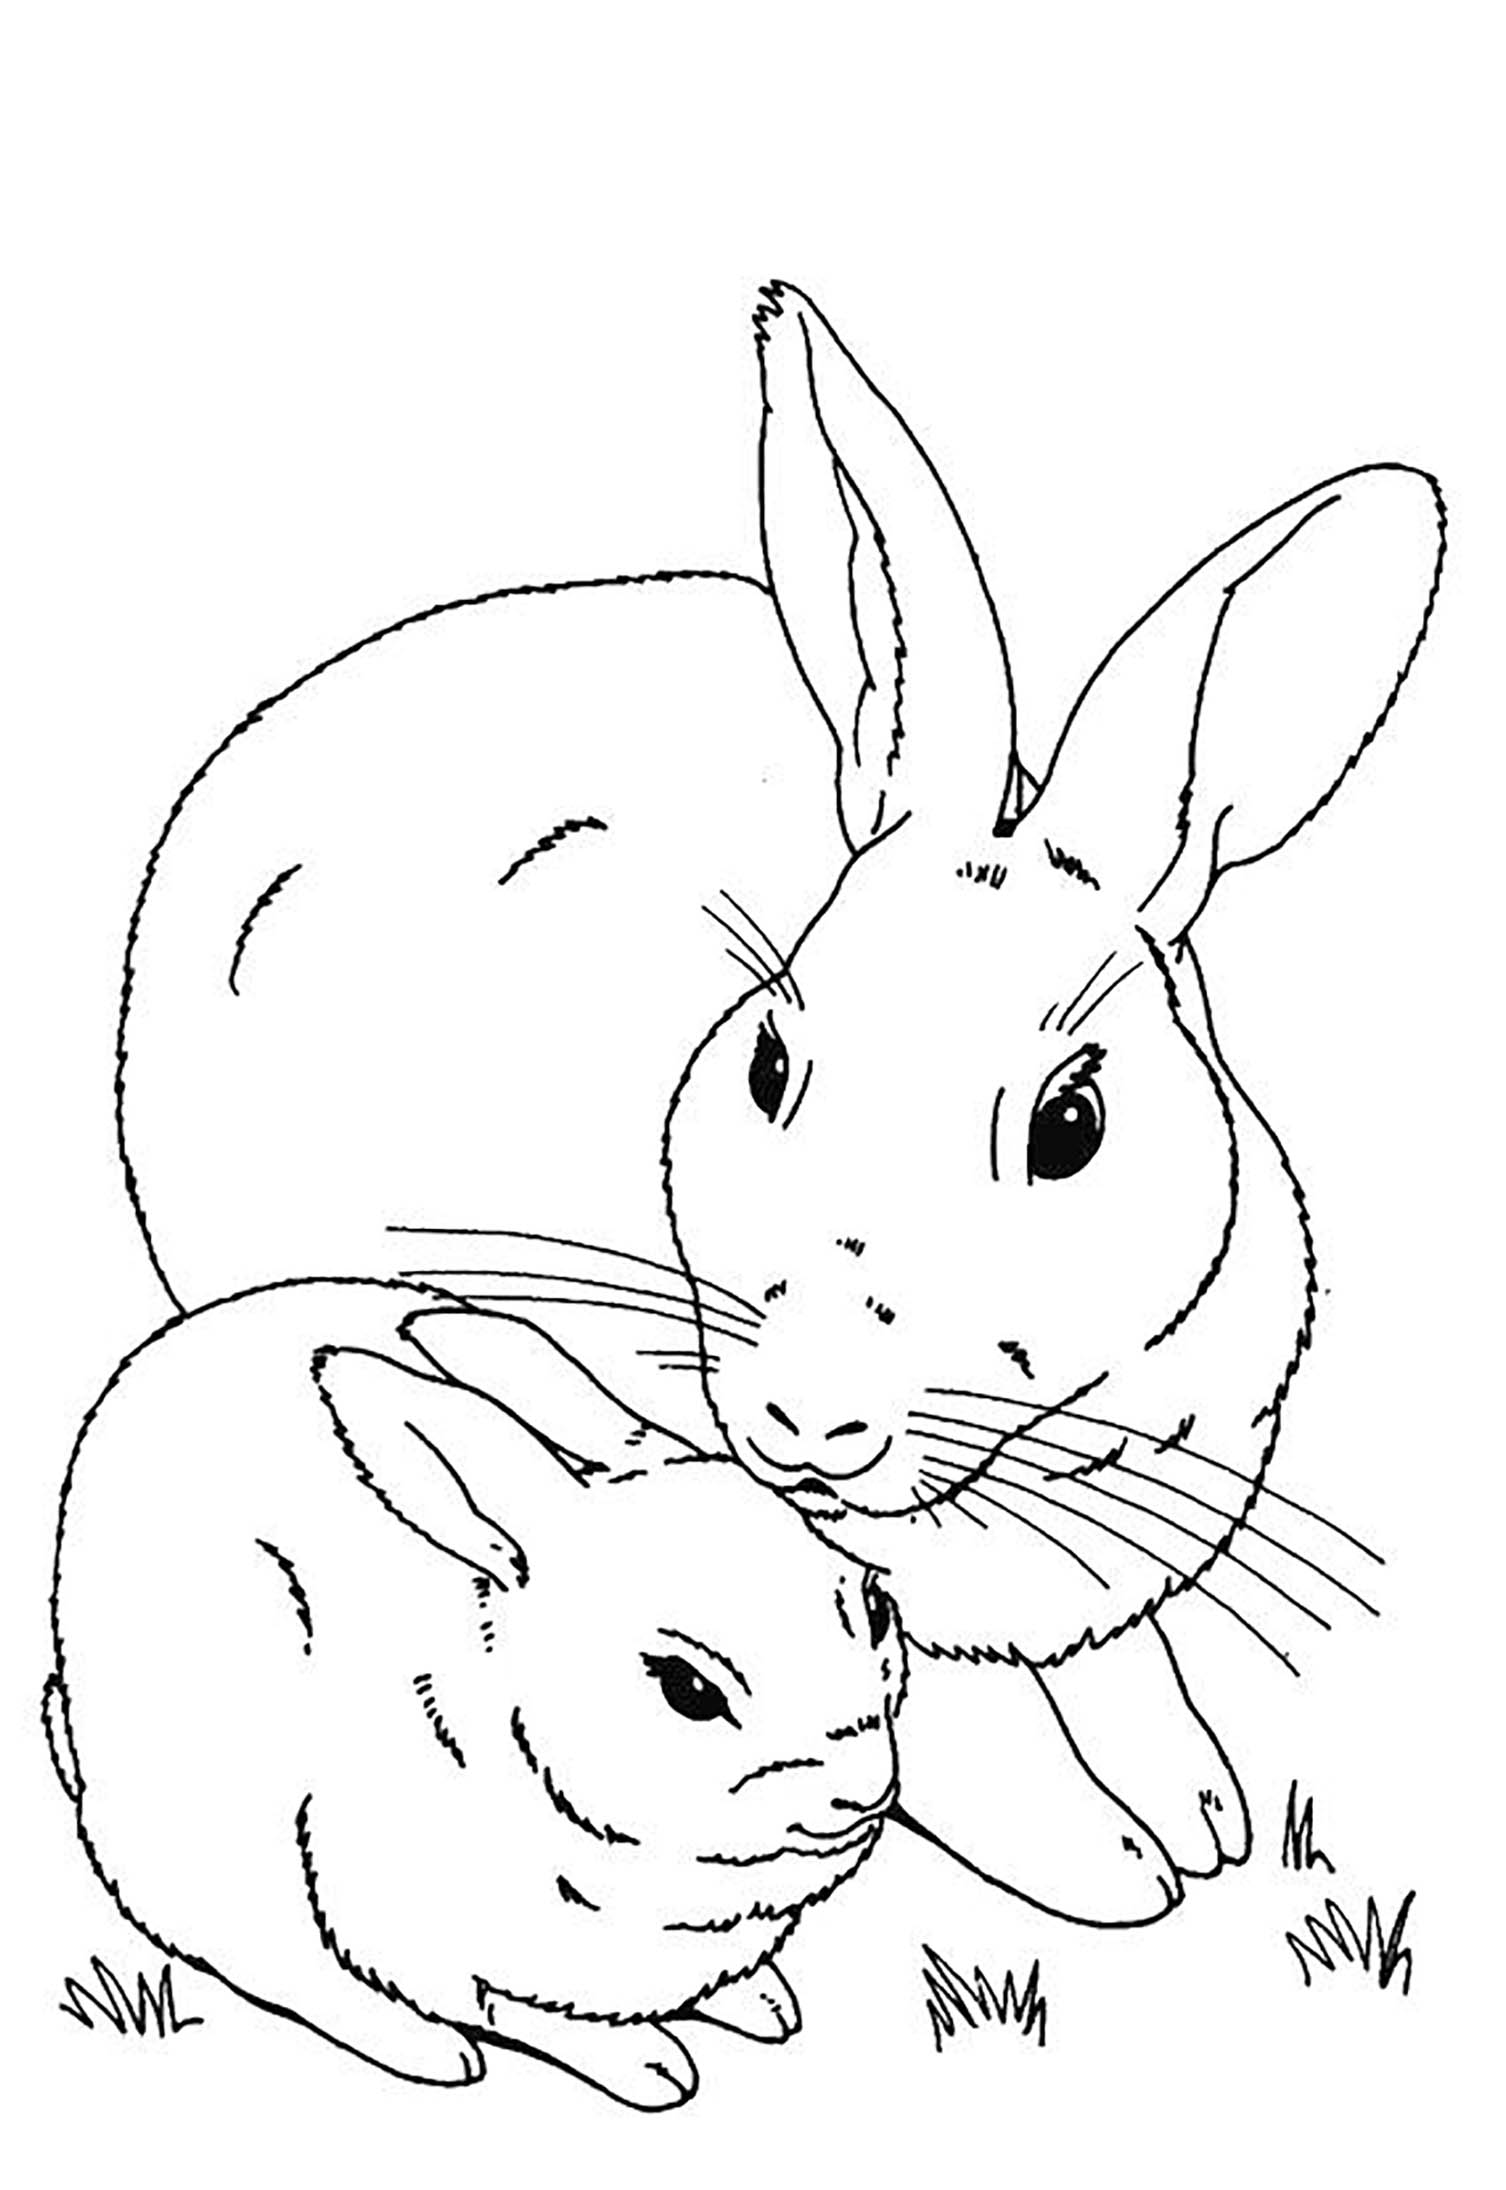 Image de lapin à télécharger et imprimer pour enfants